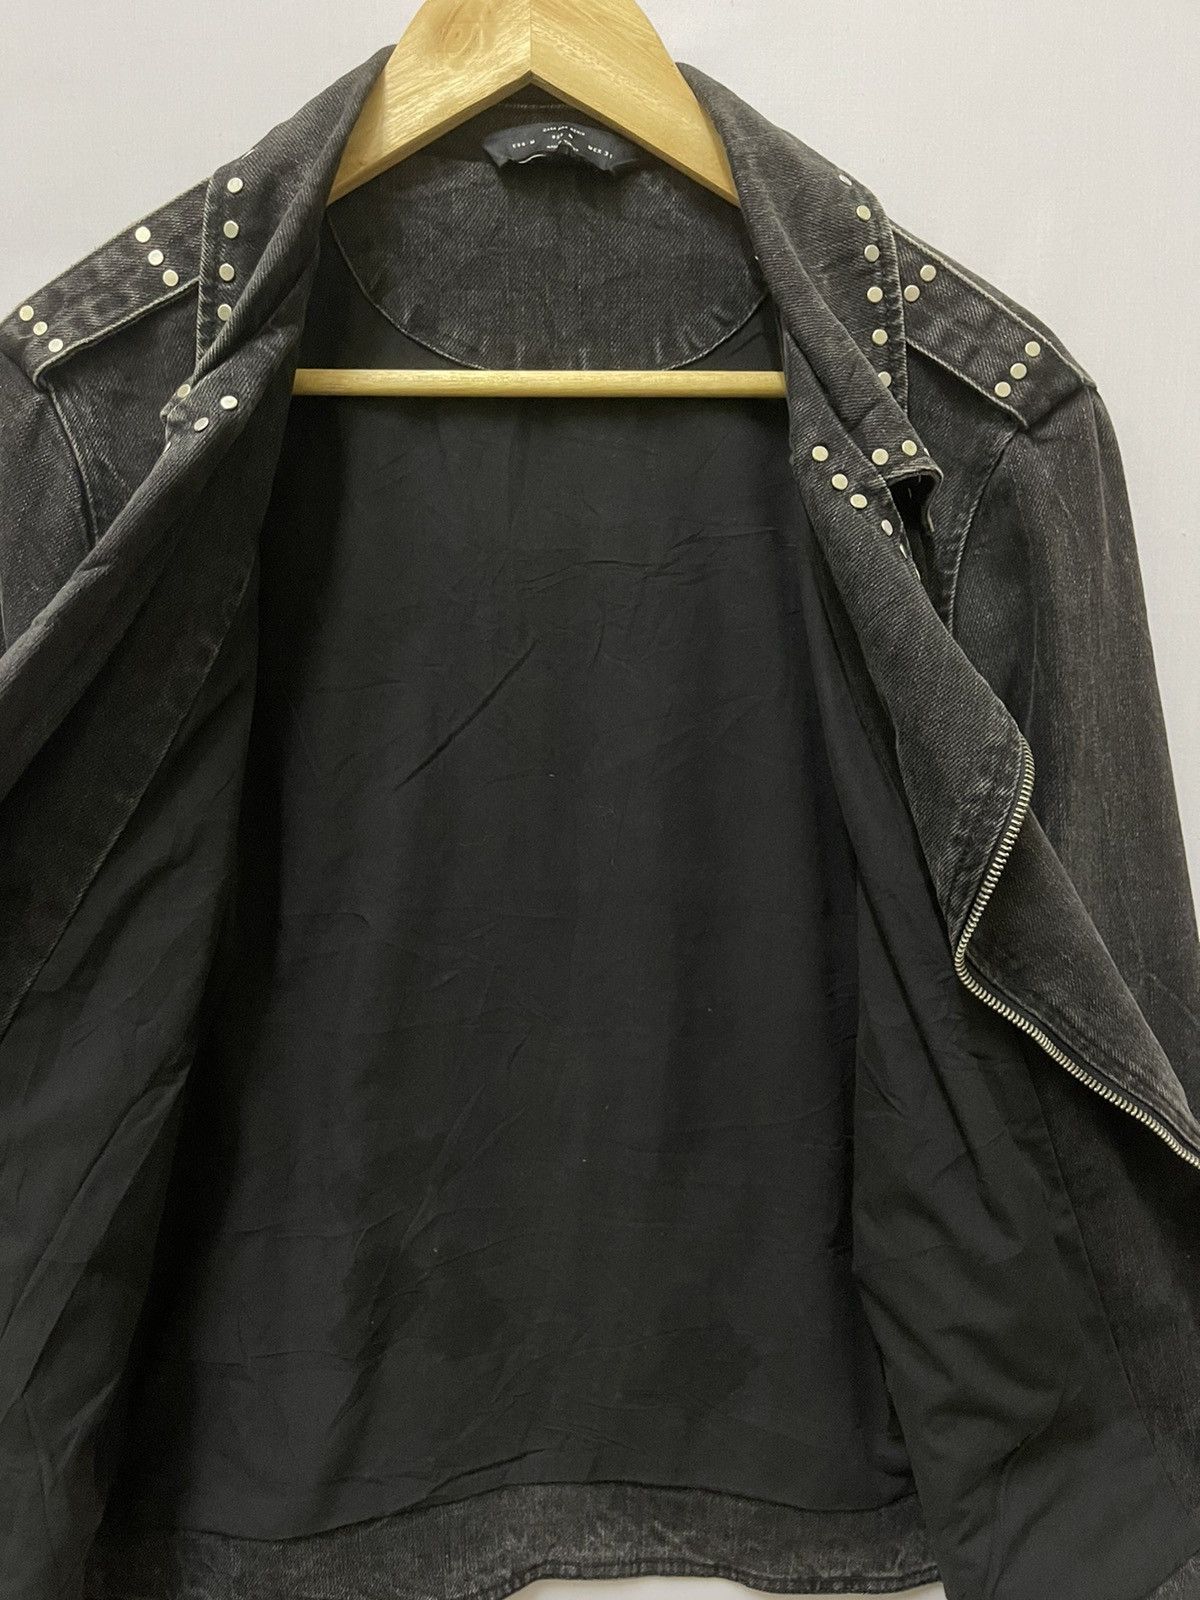 Zara Zara Man Denim Jacket Black Medium Size US M / EU 48-50 / 2 - 3 Thumbnail